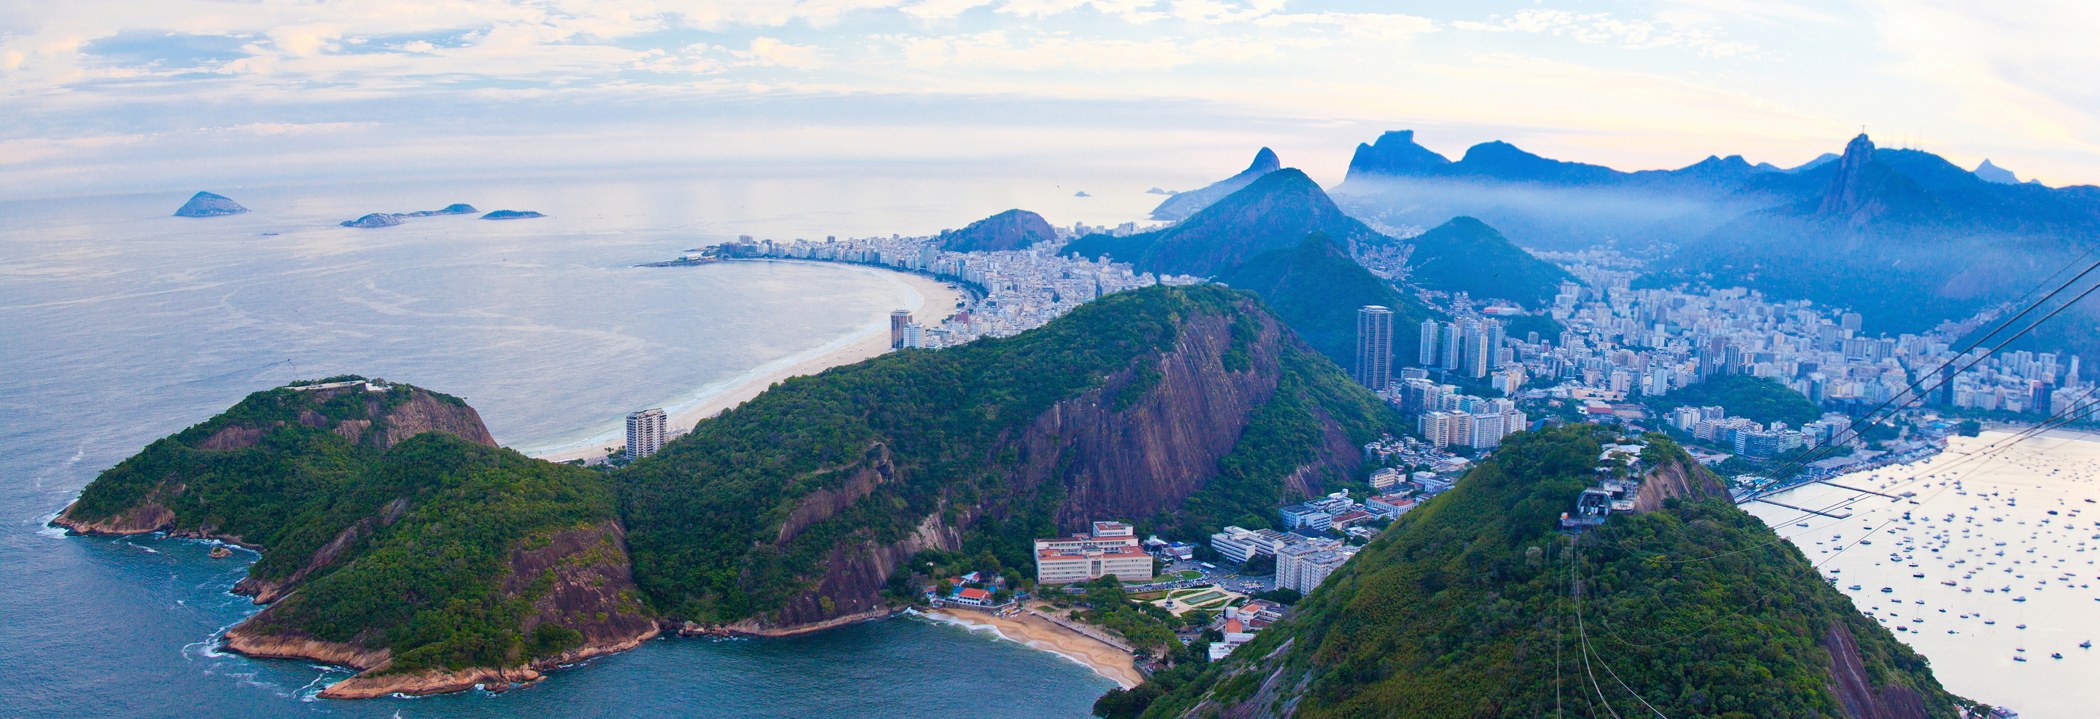 Rio-de-Janeiro_pano_by_Vladimir_Filvarkiv_for_ChanceToTrip_11